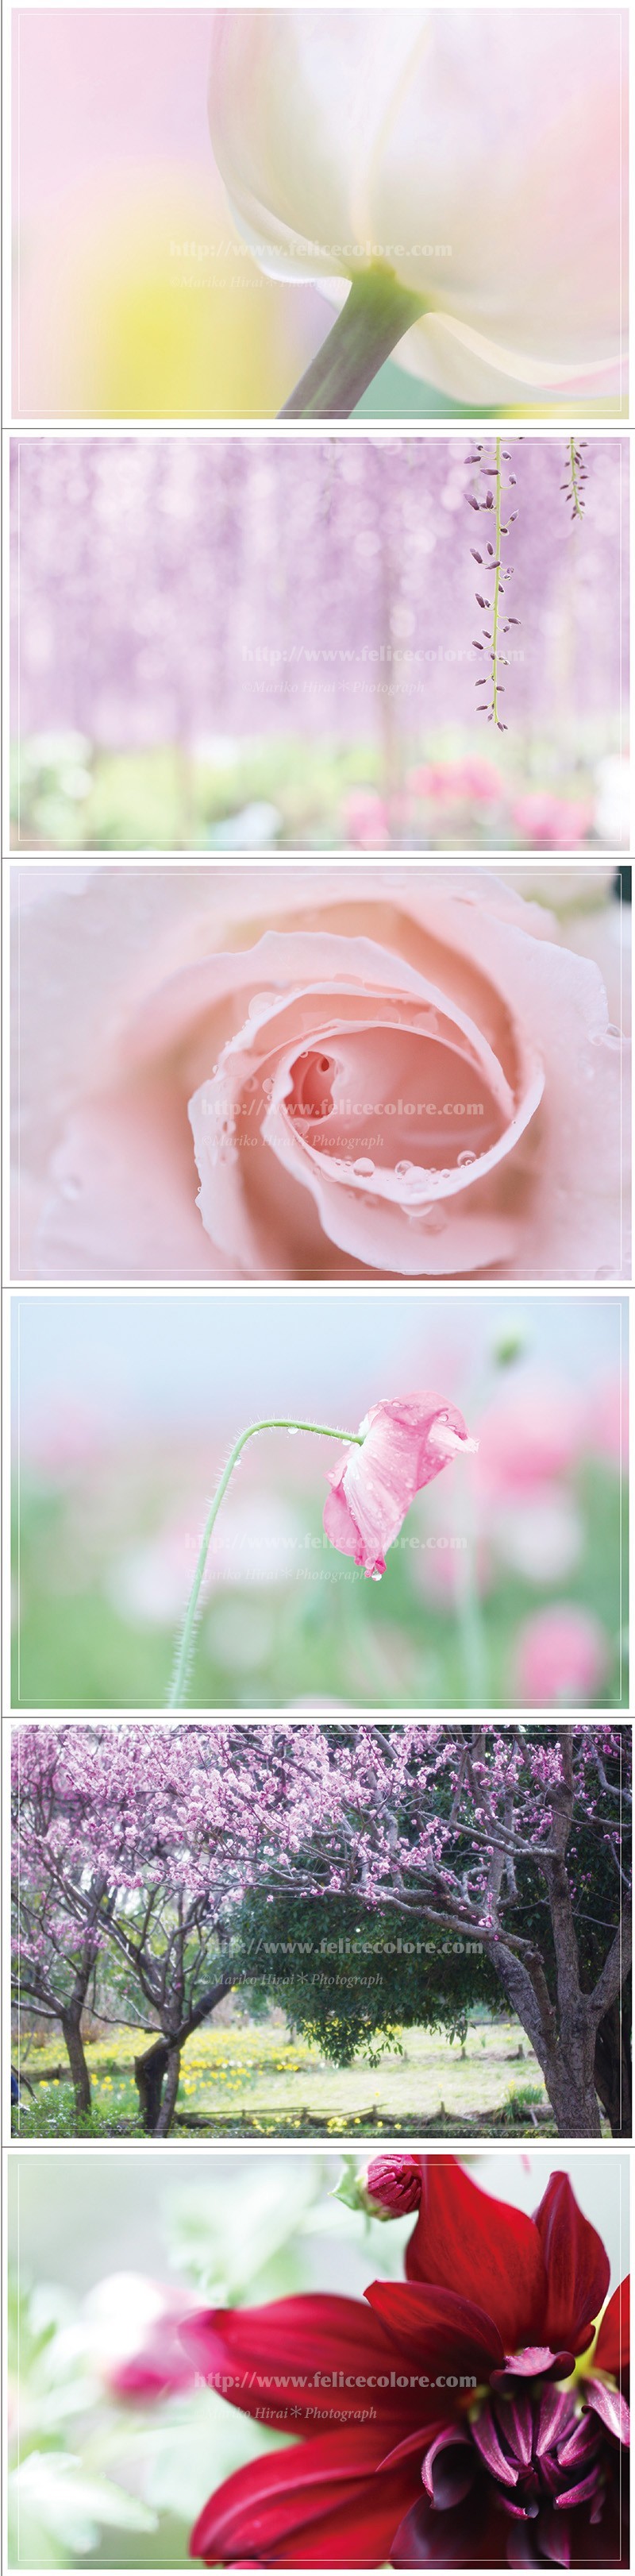 ポストカード集 横写真 ピンクパープル Iichi ハンドメイド クラフト作品 手仕事品の通販